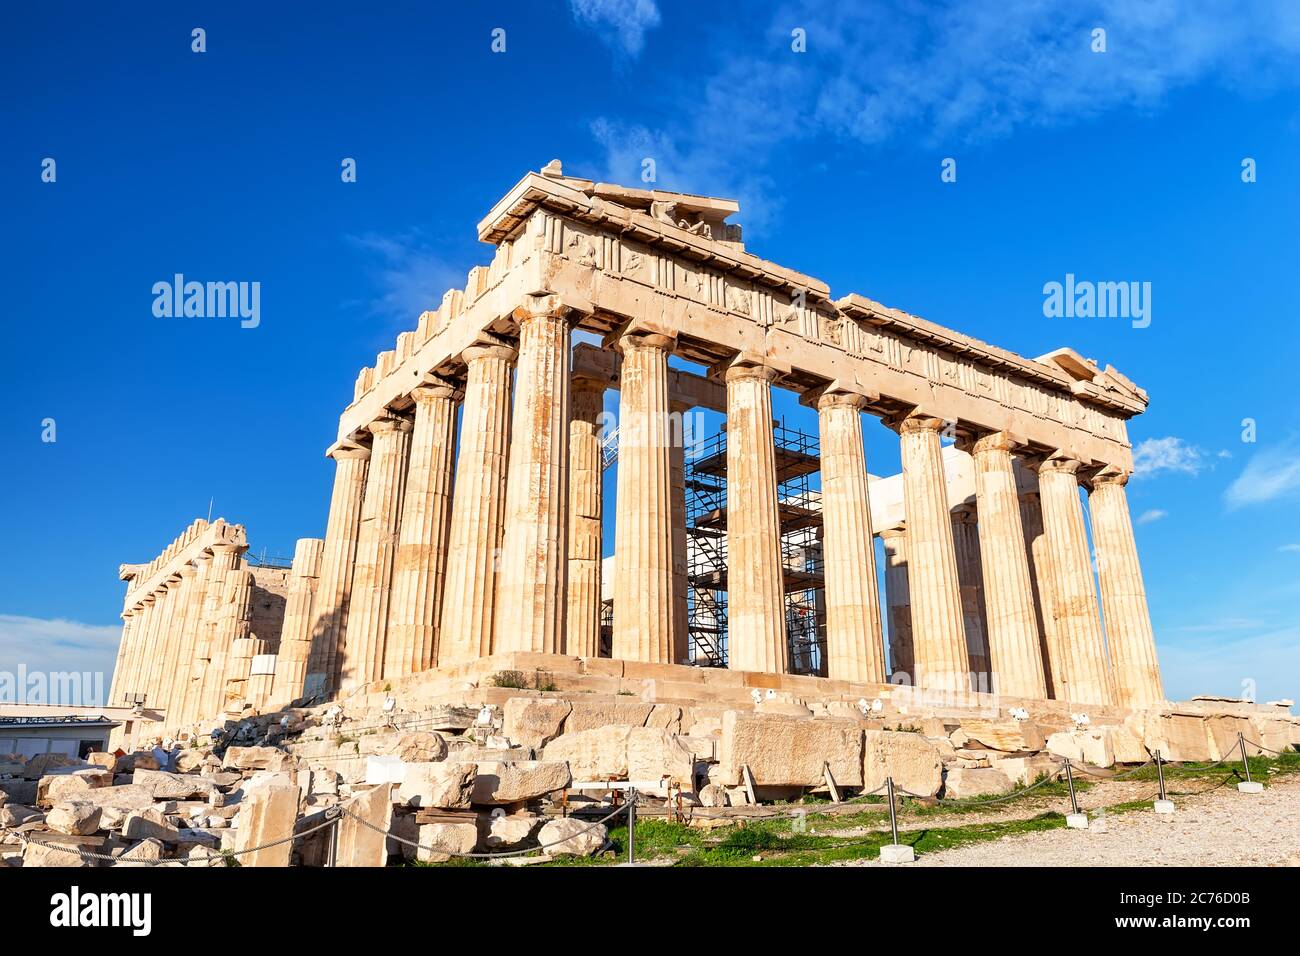 Temple de Parthénon en journée ensoleillée. Acropole à Athènes, Grèce. Le Parthénon est un temple sur l'Acropole athénienne en Grèce. Banque D'Images